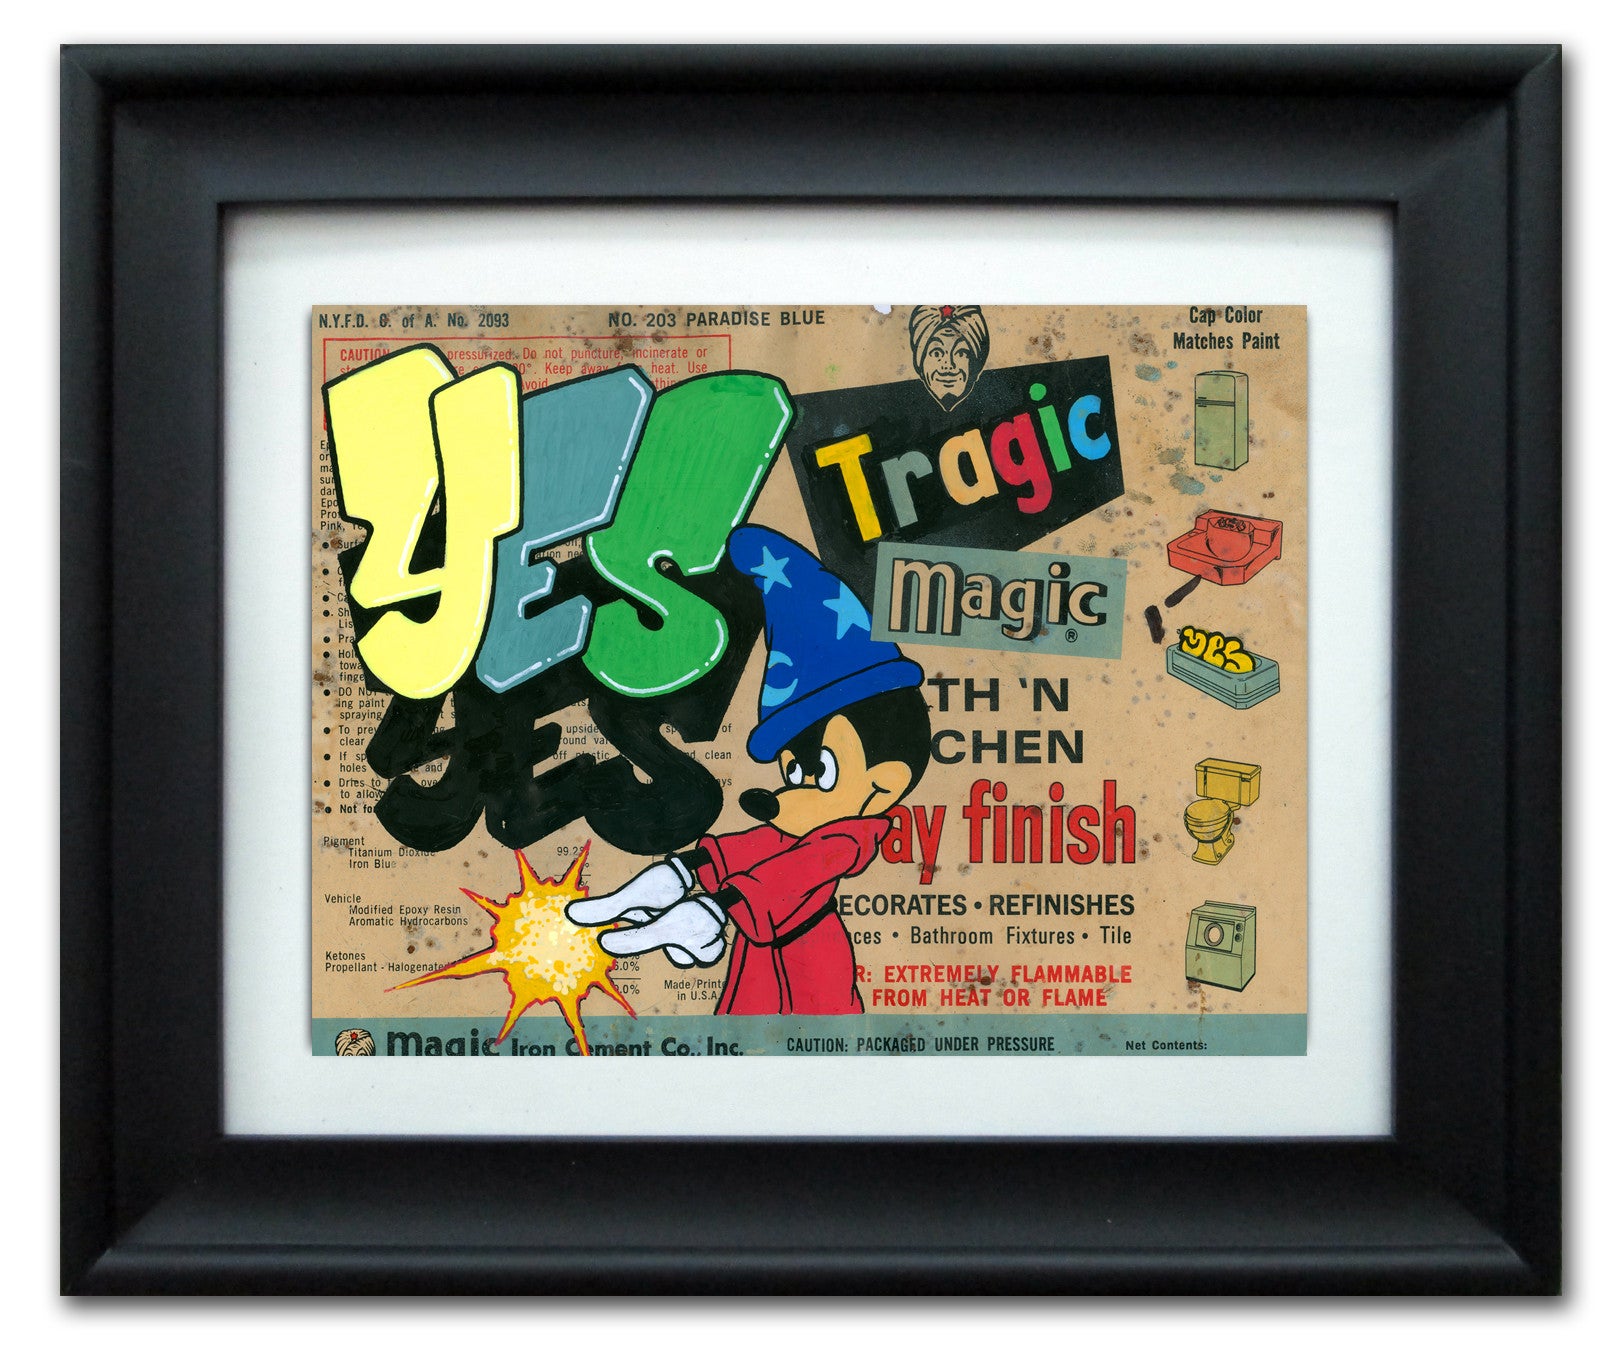 YES2 - "Tragic Magic" Vintage Label